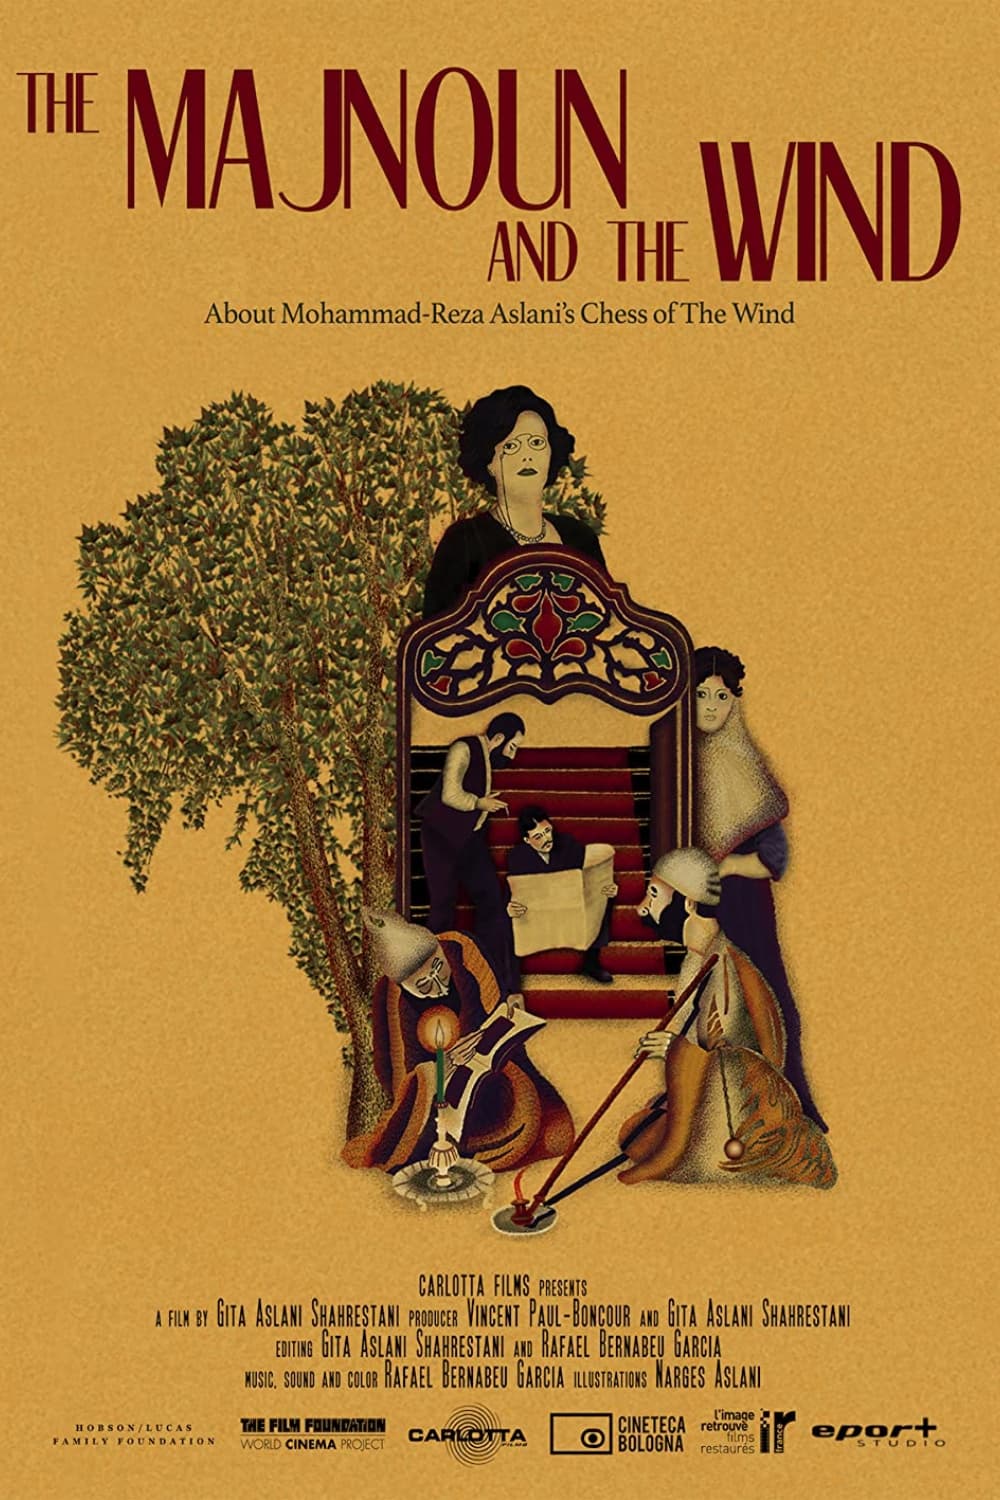 The Majnoun and the Wind